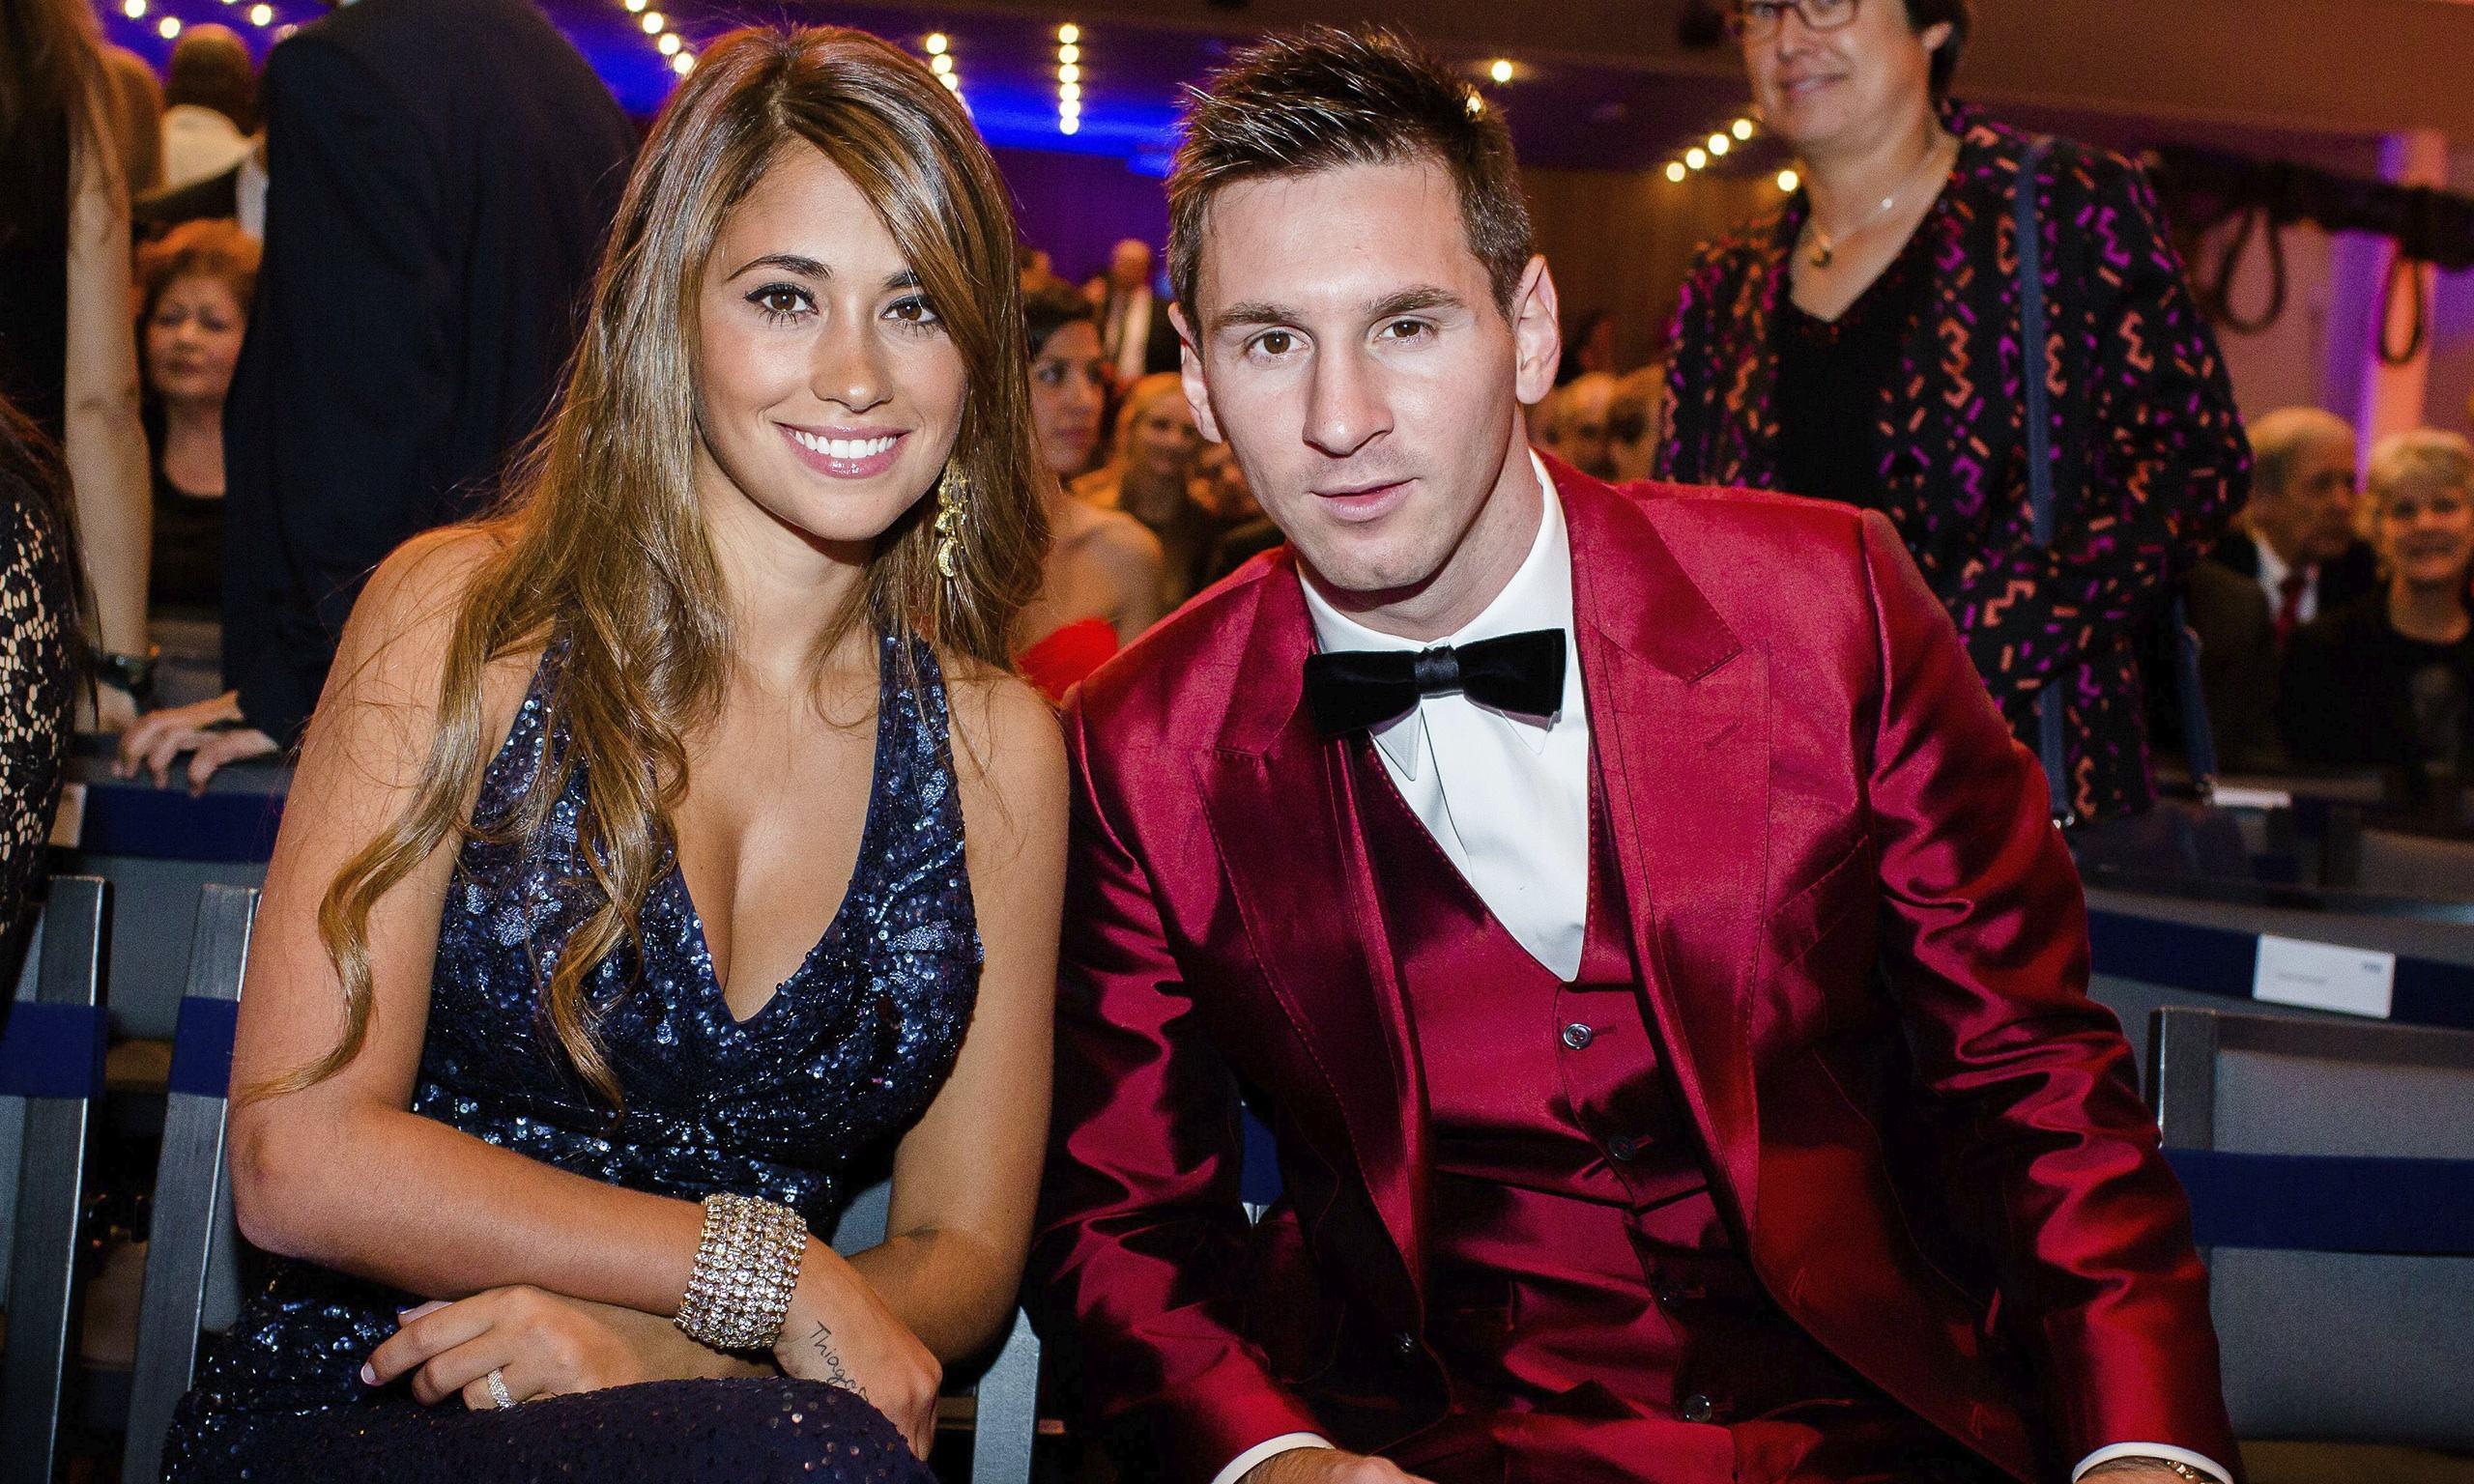 La surprenante invitation de la compagne de Messi à Cristiano Ronaldo